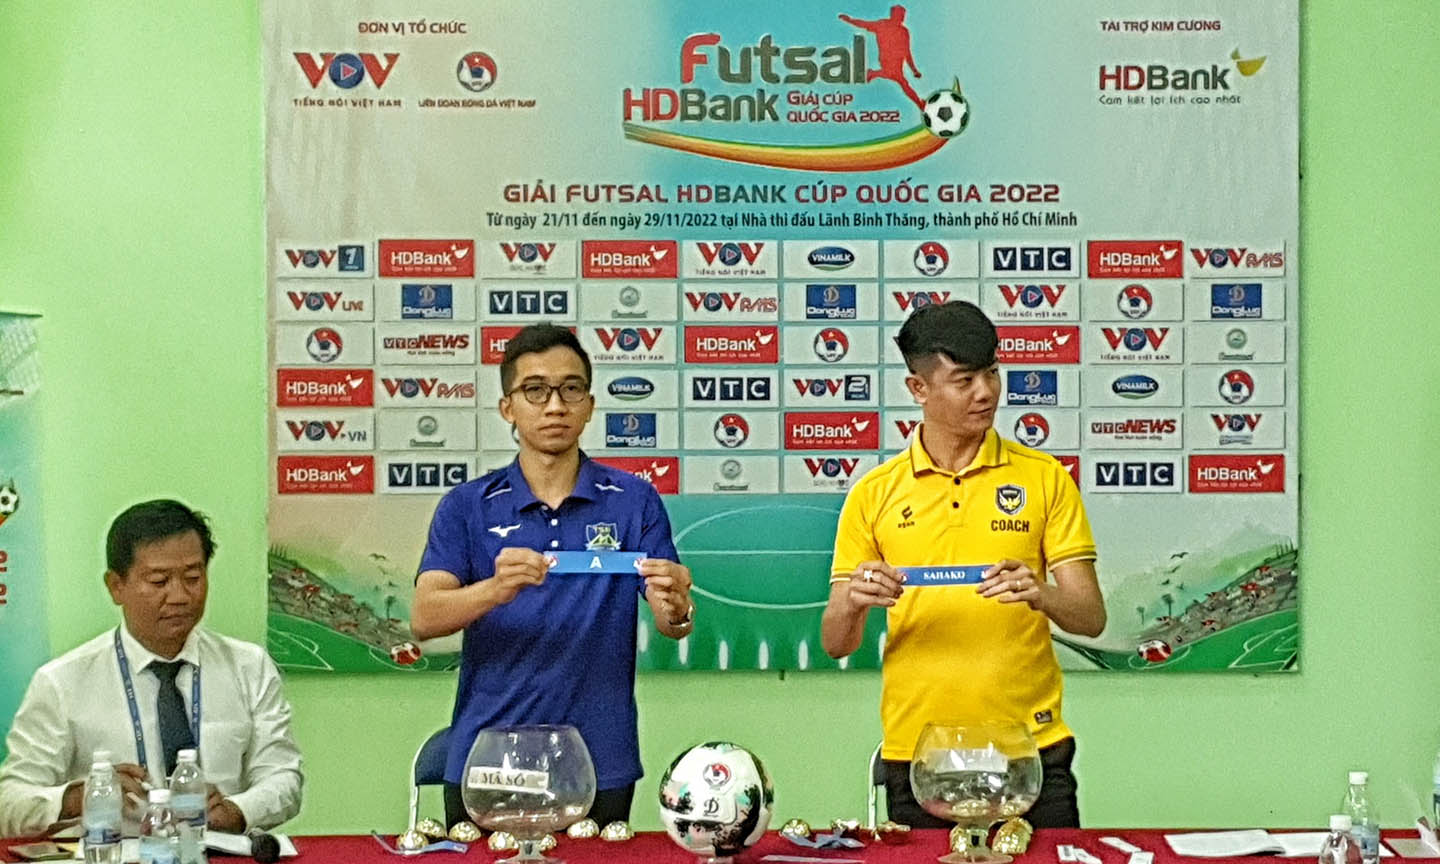 7 đội tranh tài Giải Futsal HDBank Cúp Quốc gia 2022